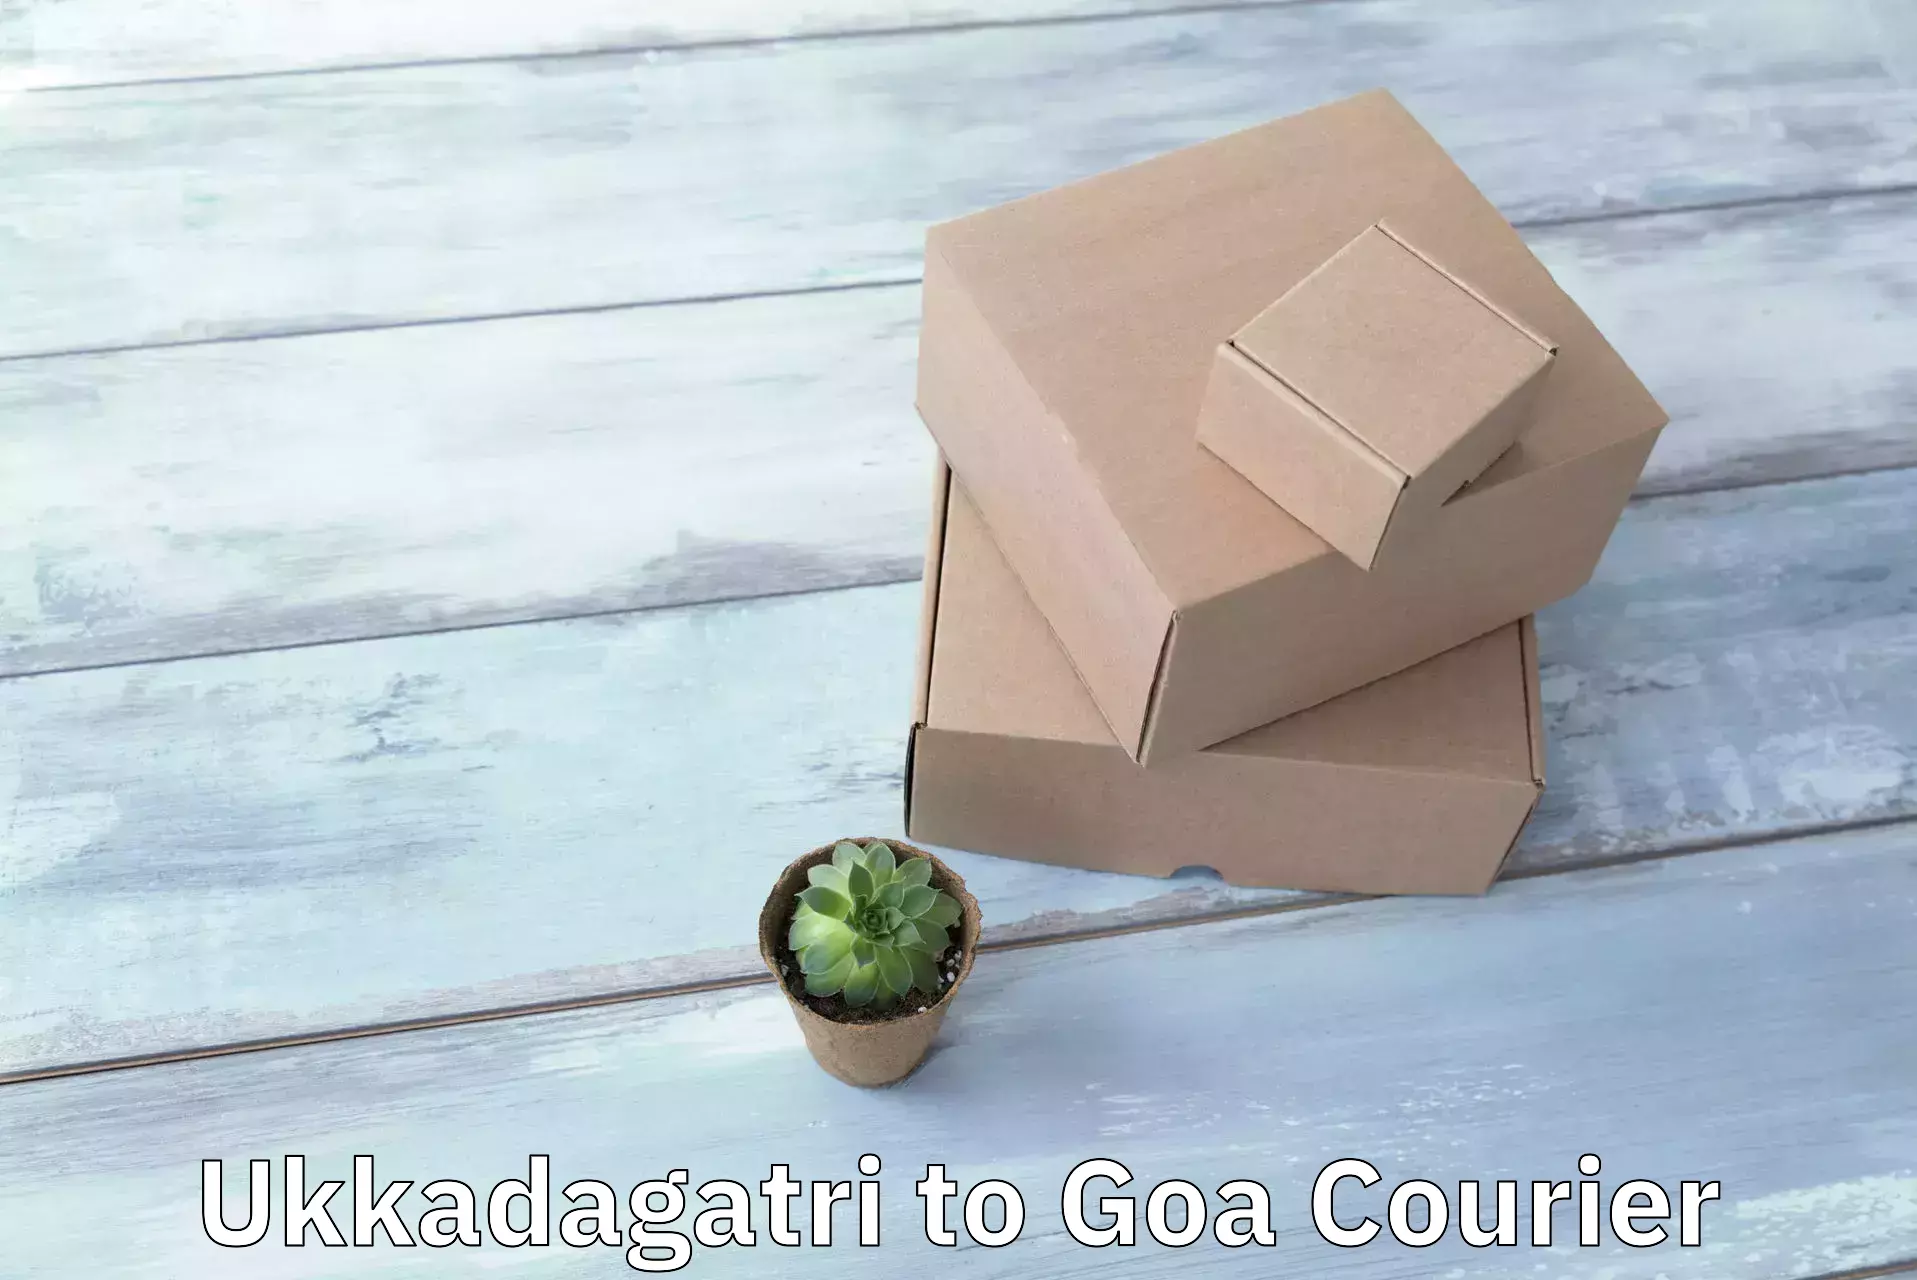 Commercial shipping rates Ukkadagatri to Goa University